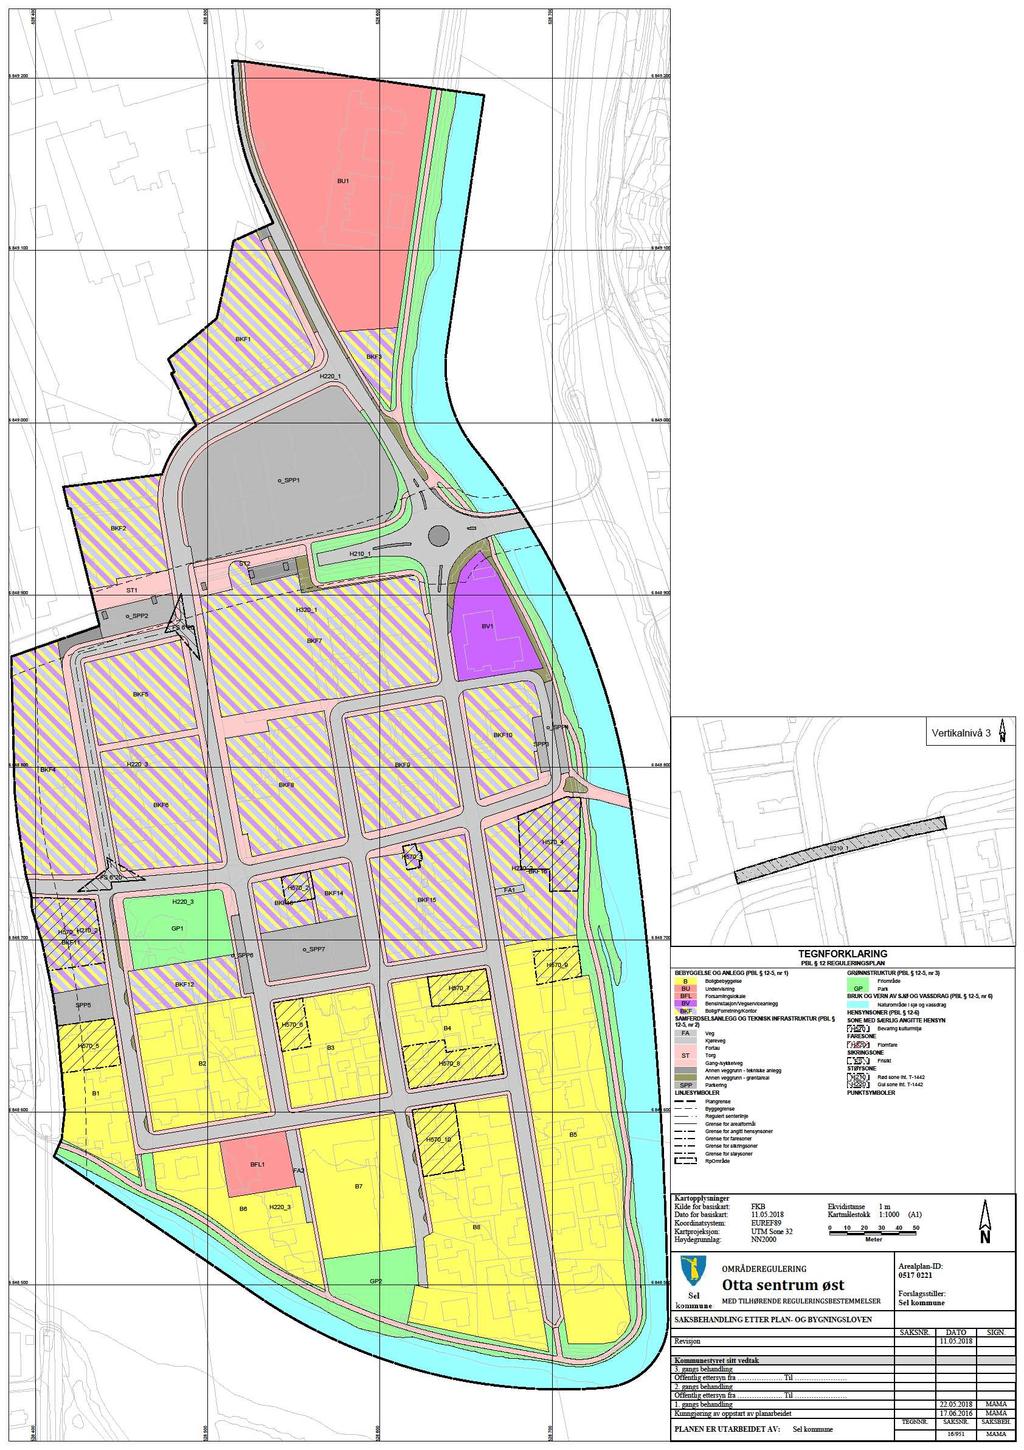 Sel kommune har utarbeidet planforslag til områdereguleringsplan for Otta sentrum øst.